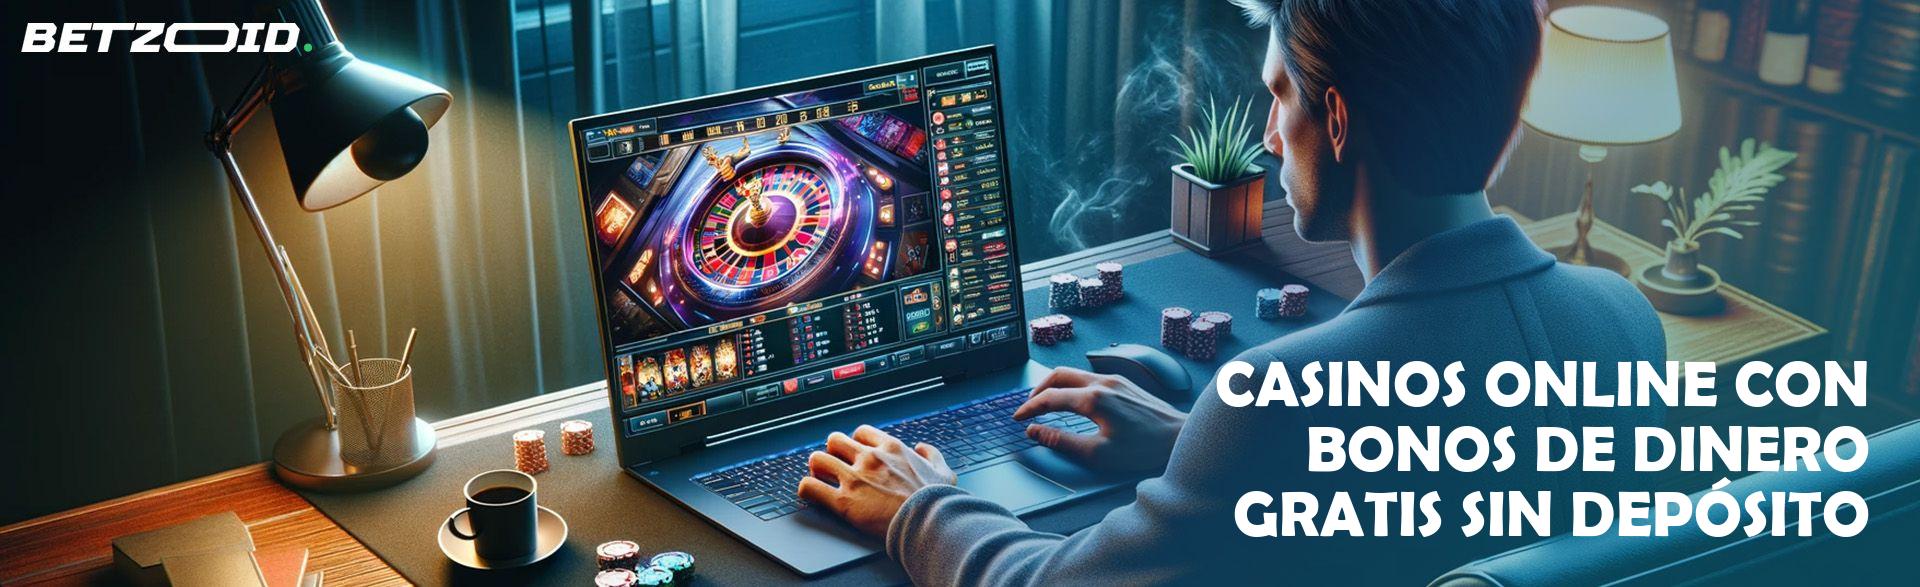 Casinos Online con Bonos de Dinero Gratis sin Depósito.